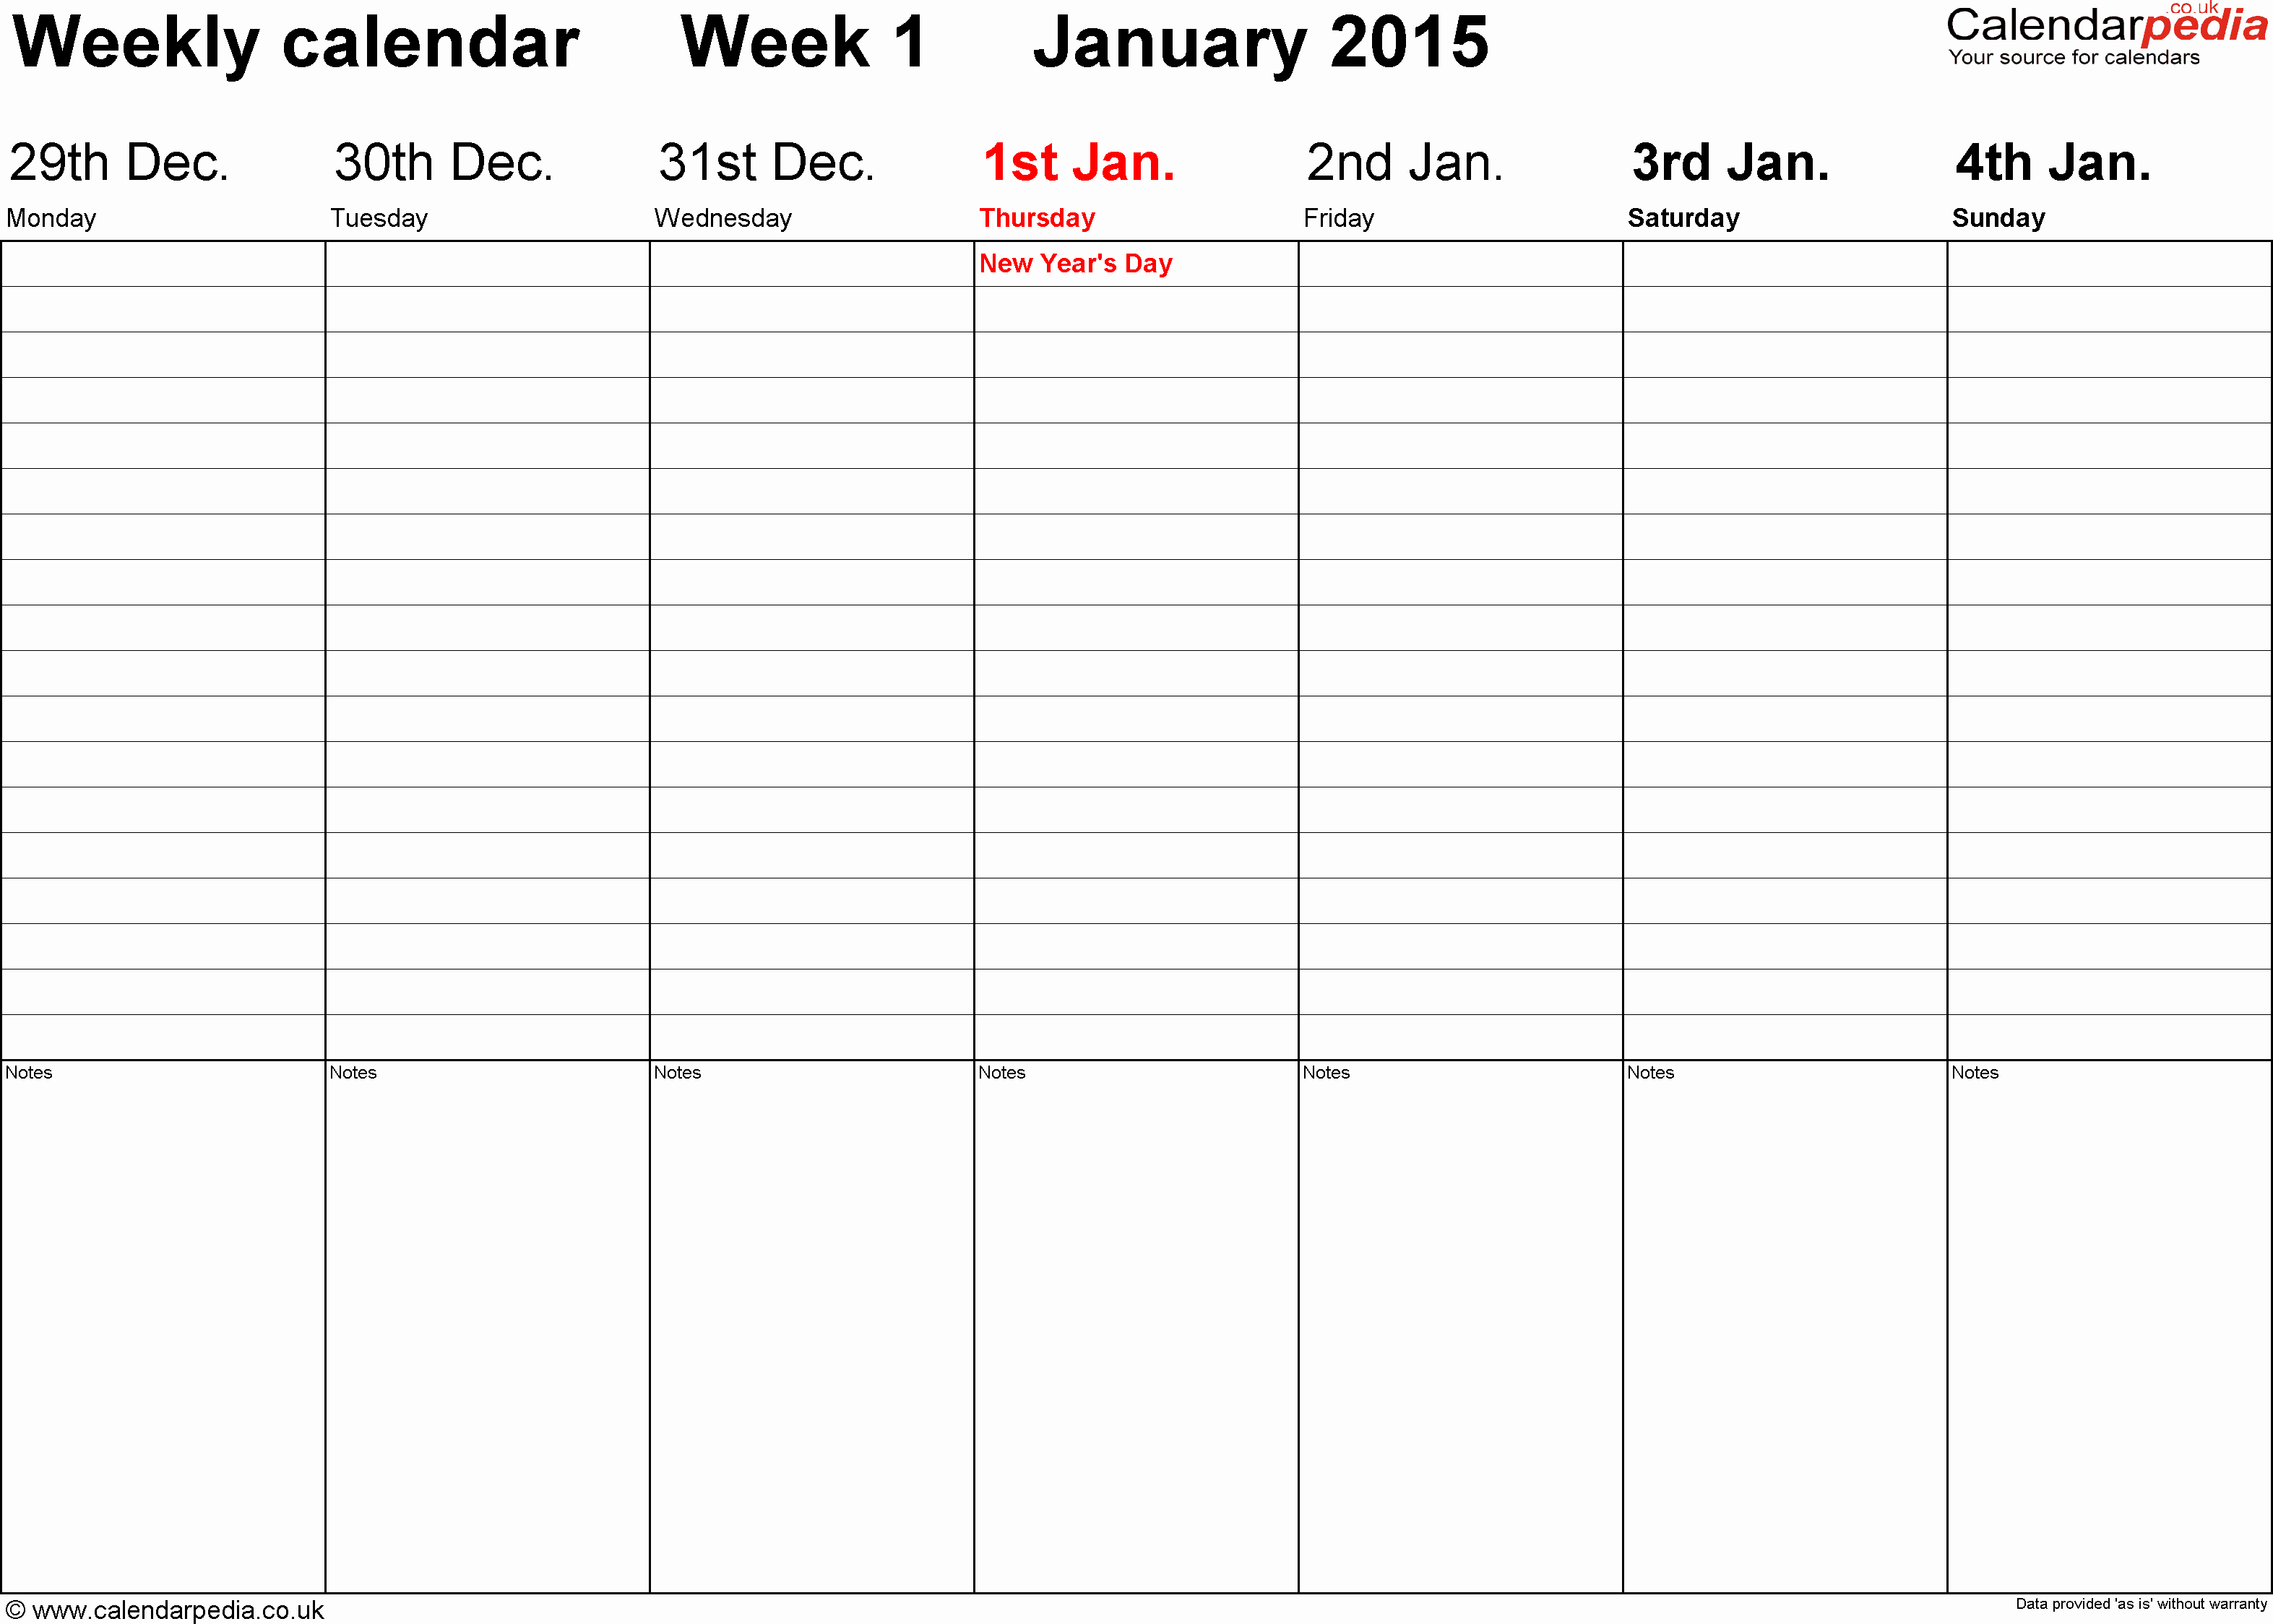 Free Printable Daily Calendar 2015 Inspirational Weekly Calendar 2015 Uk Free Printable Templates for Word